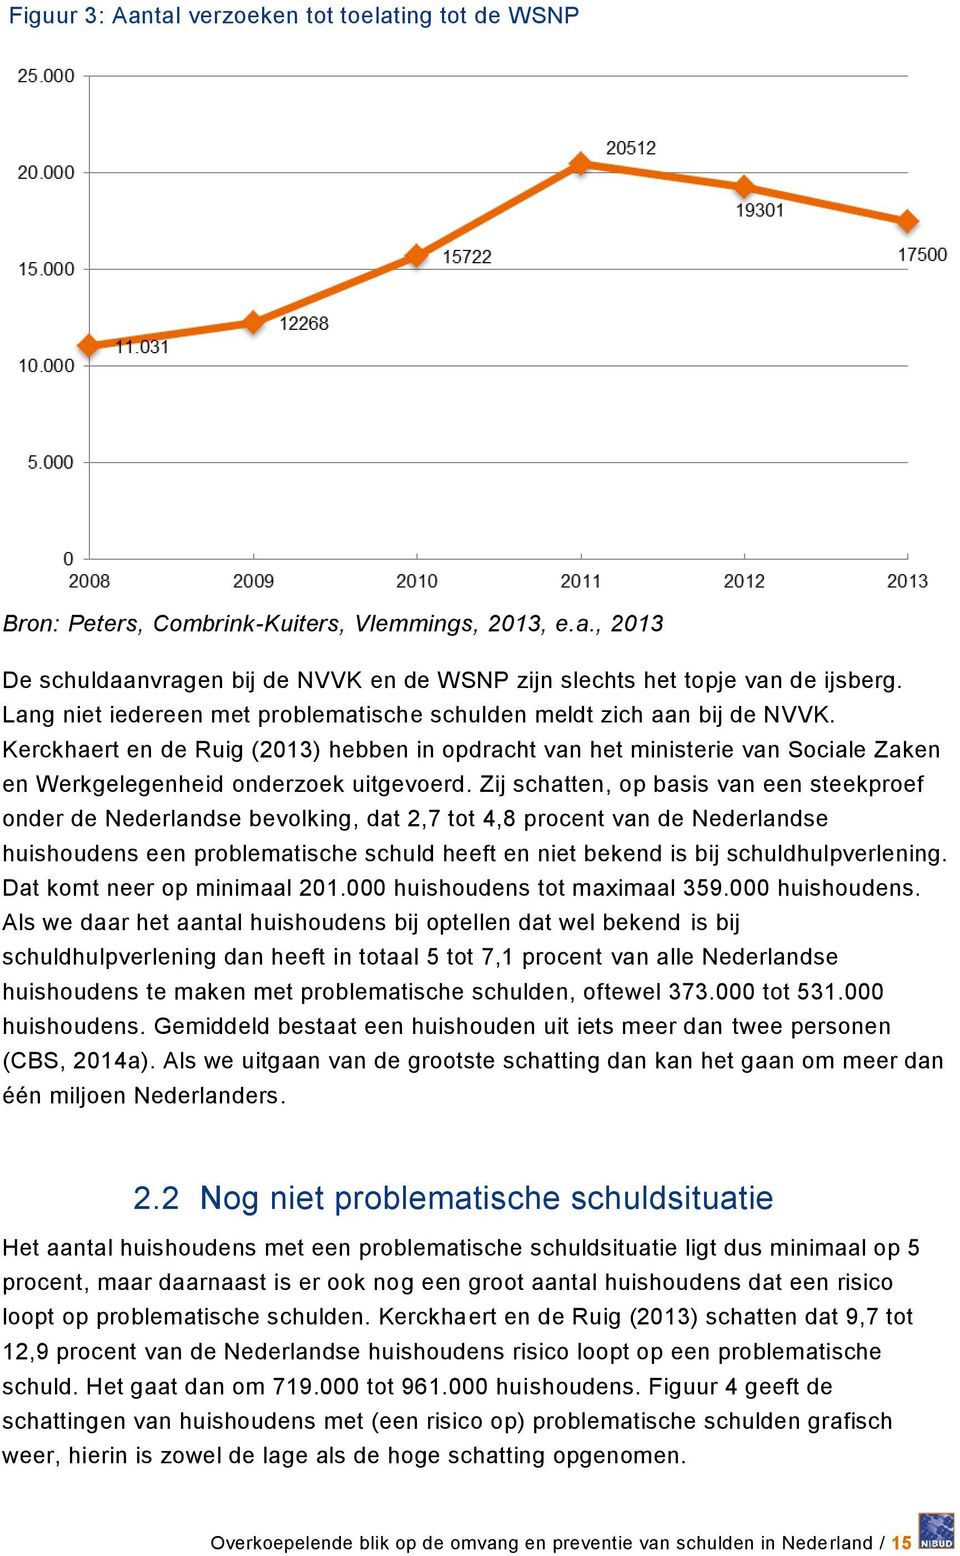 Zij schatten, op basis van een steekproef onder de Nederlandse bevolking, dat 2,7 tot 4,8 procent van de Nederlandse huishoudens een problematische schuld heeft en niet bekend is bij